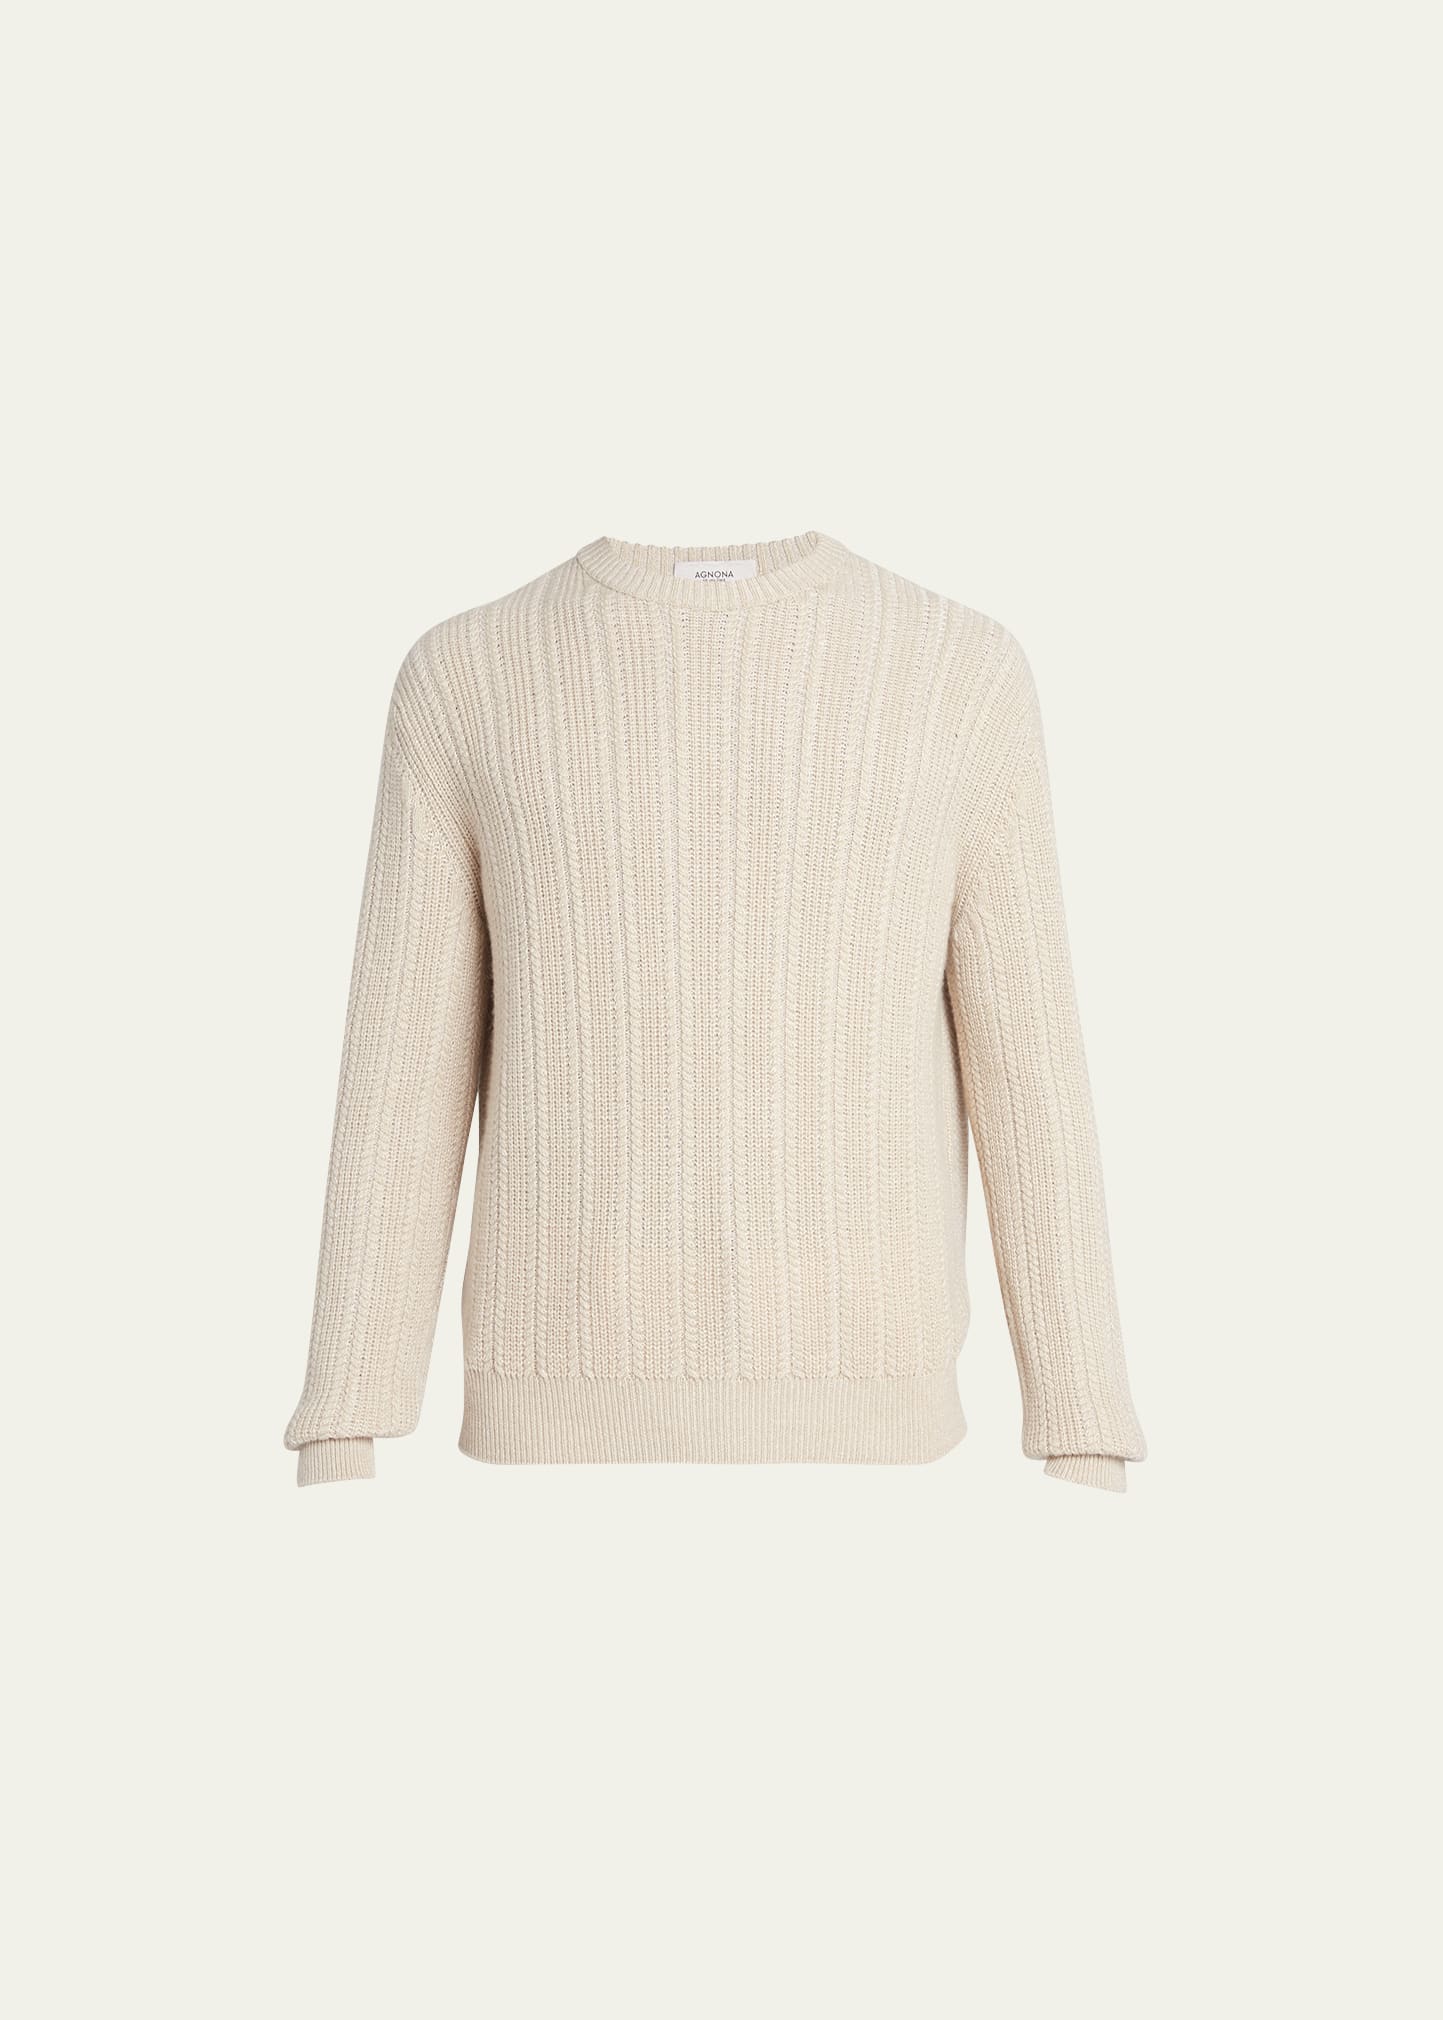 Agnona Men's Cashmere-blend Micro Cable Sweater In Cinnamon